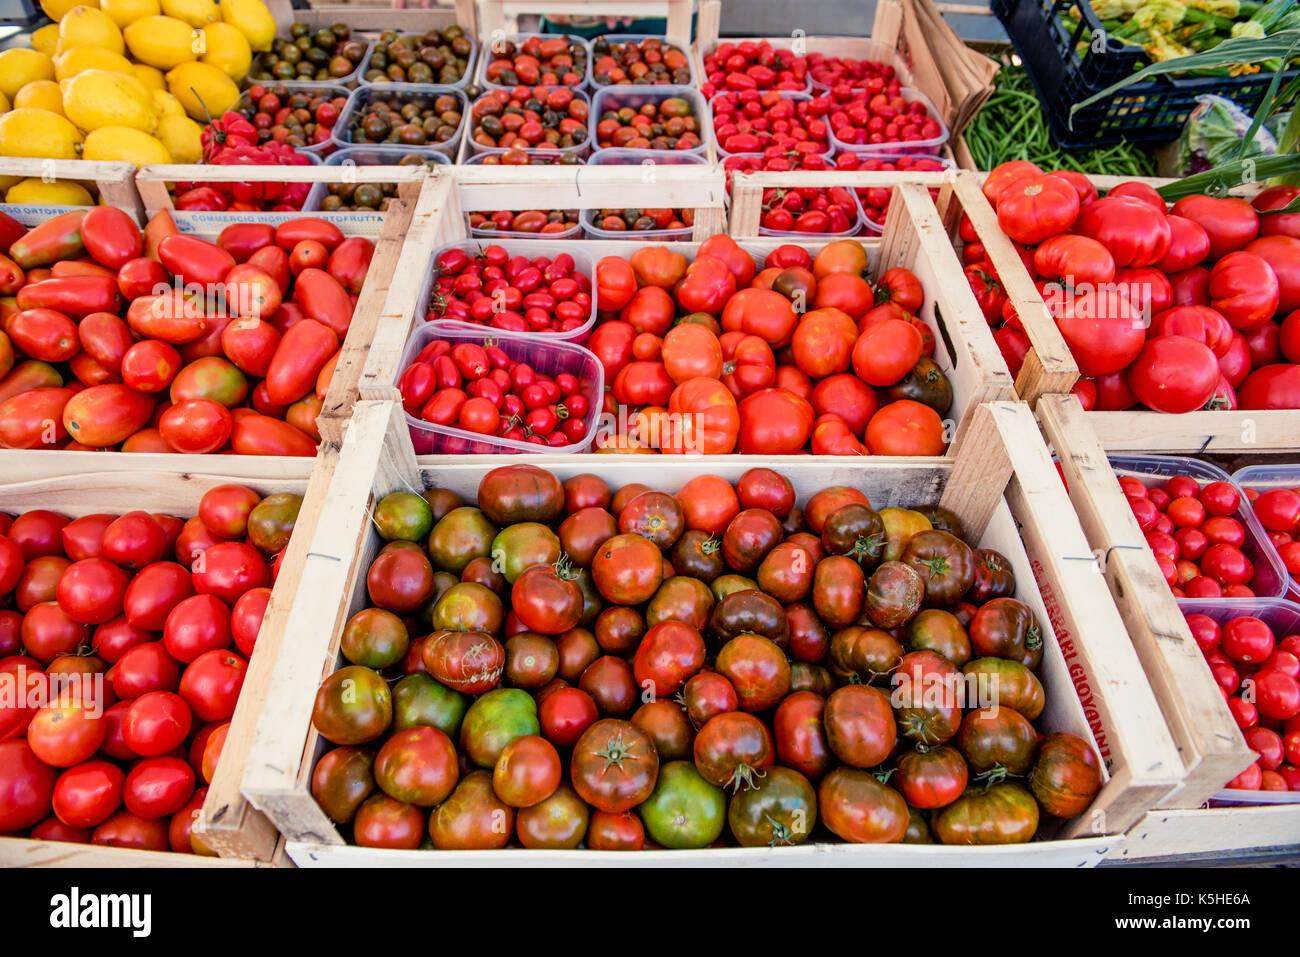 Pressione di stallo di mercato ad alto angolo di visione, casse di legno pieno di diverse varietà di pomodoro, limone e vegetali verdi in background Foto Stock